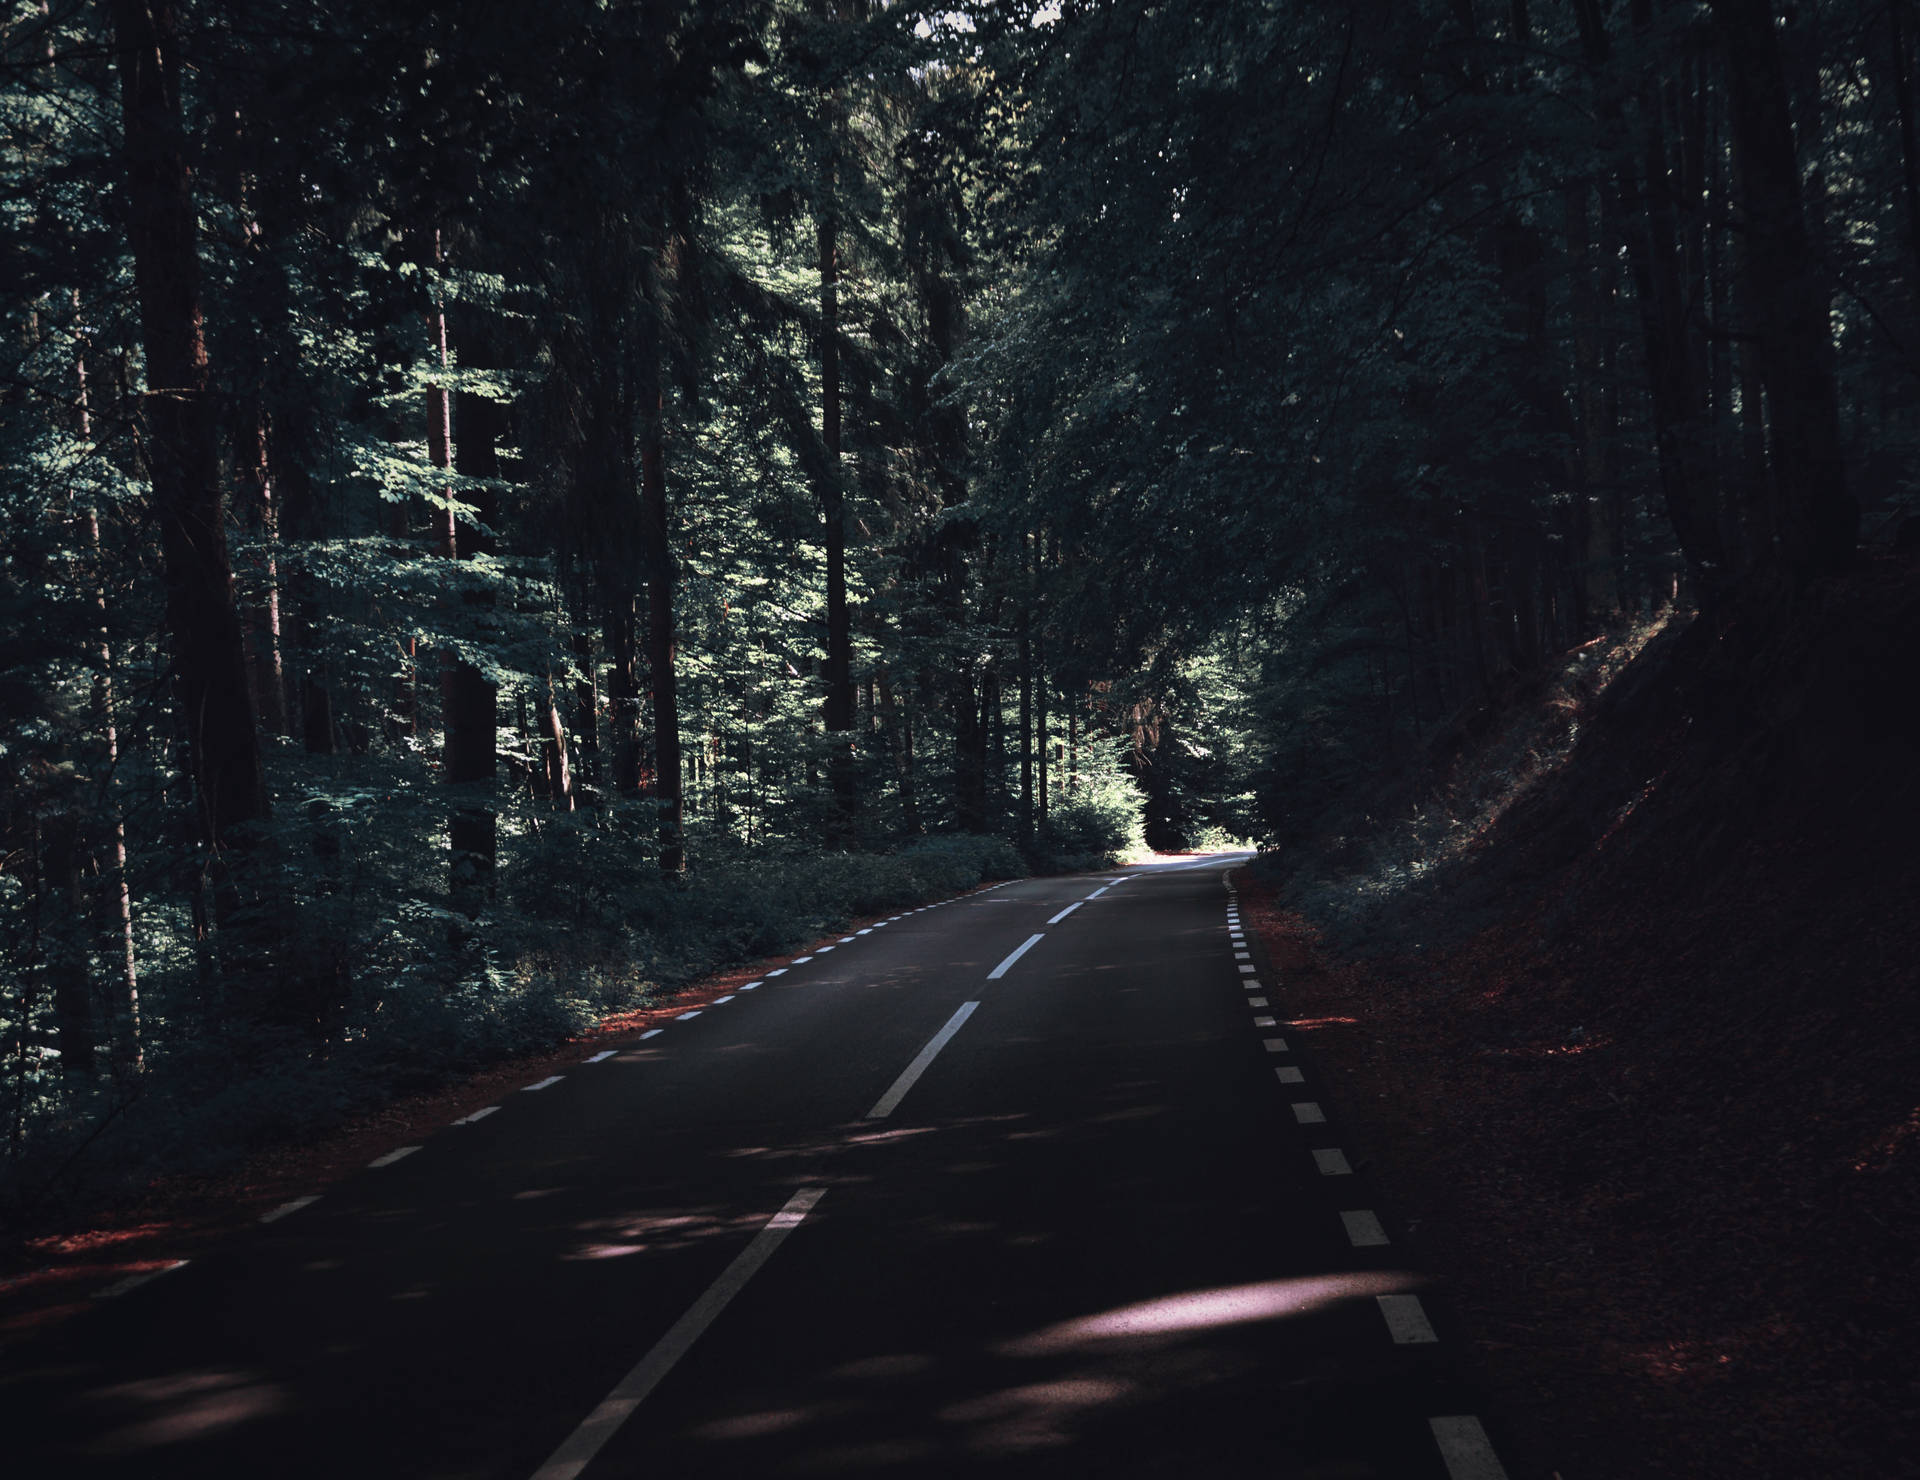 Road Under Dark Green Trees